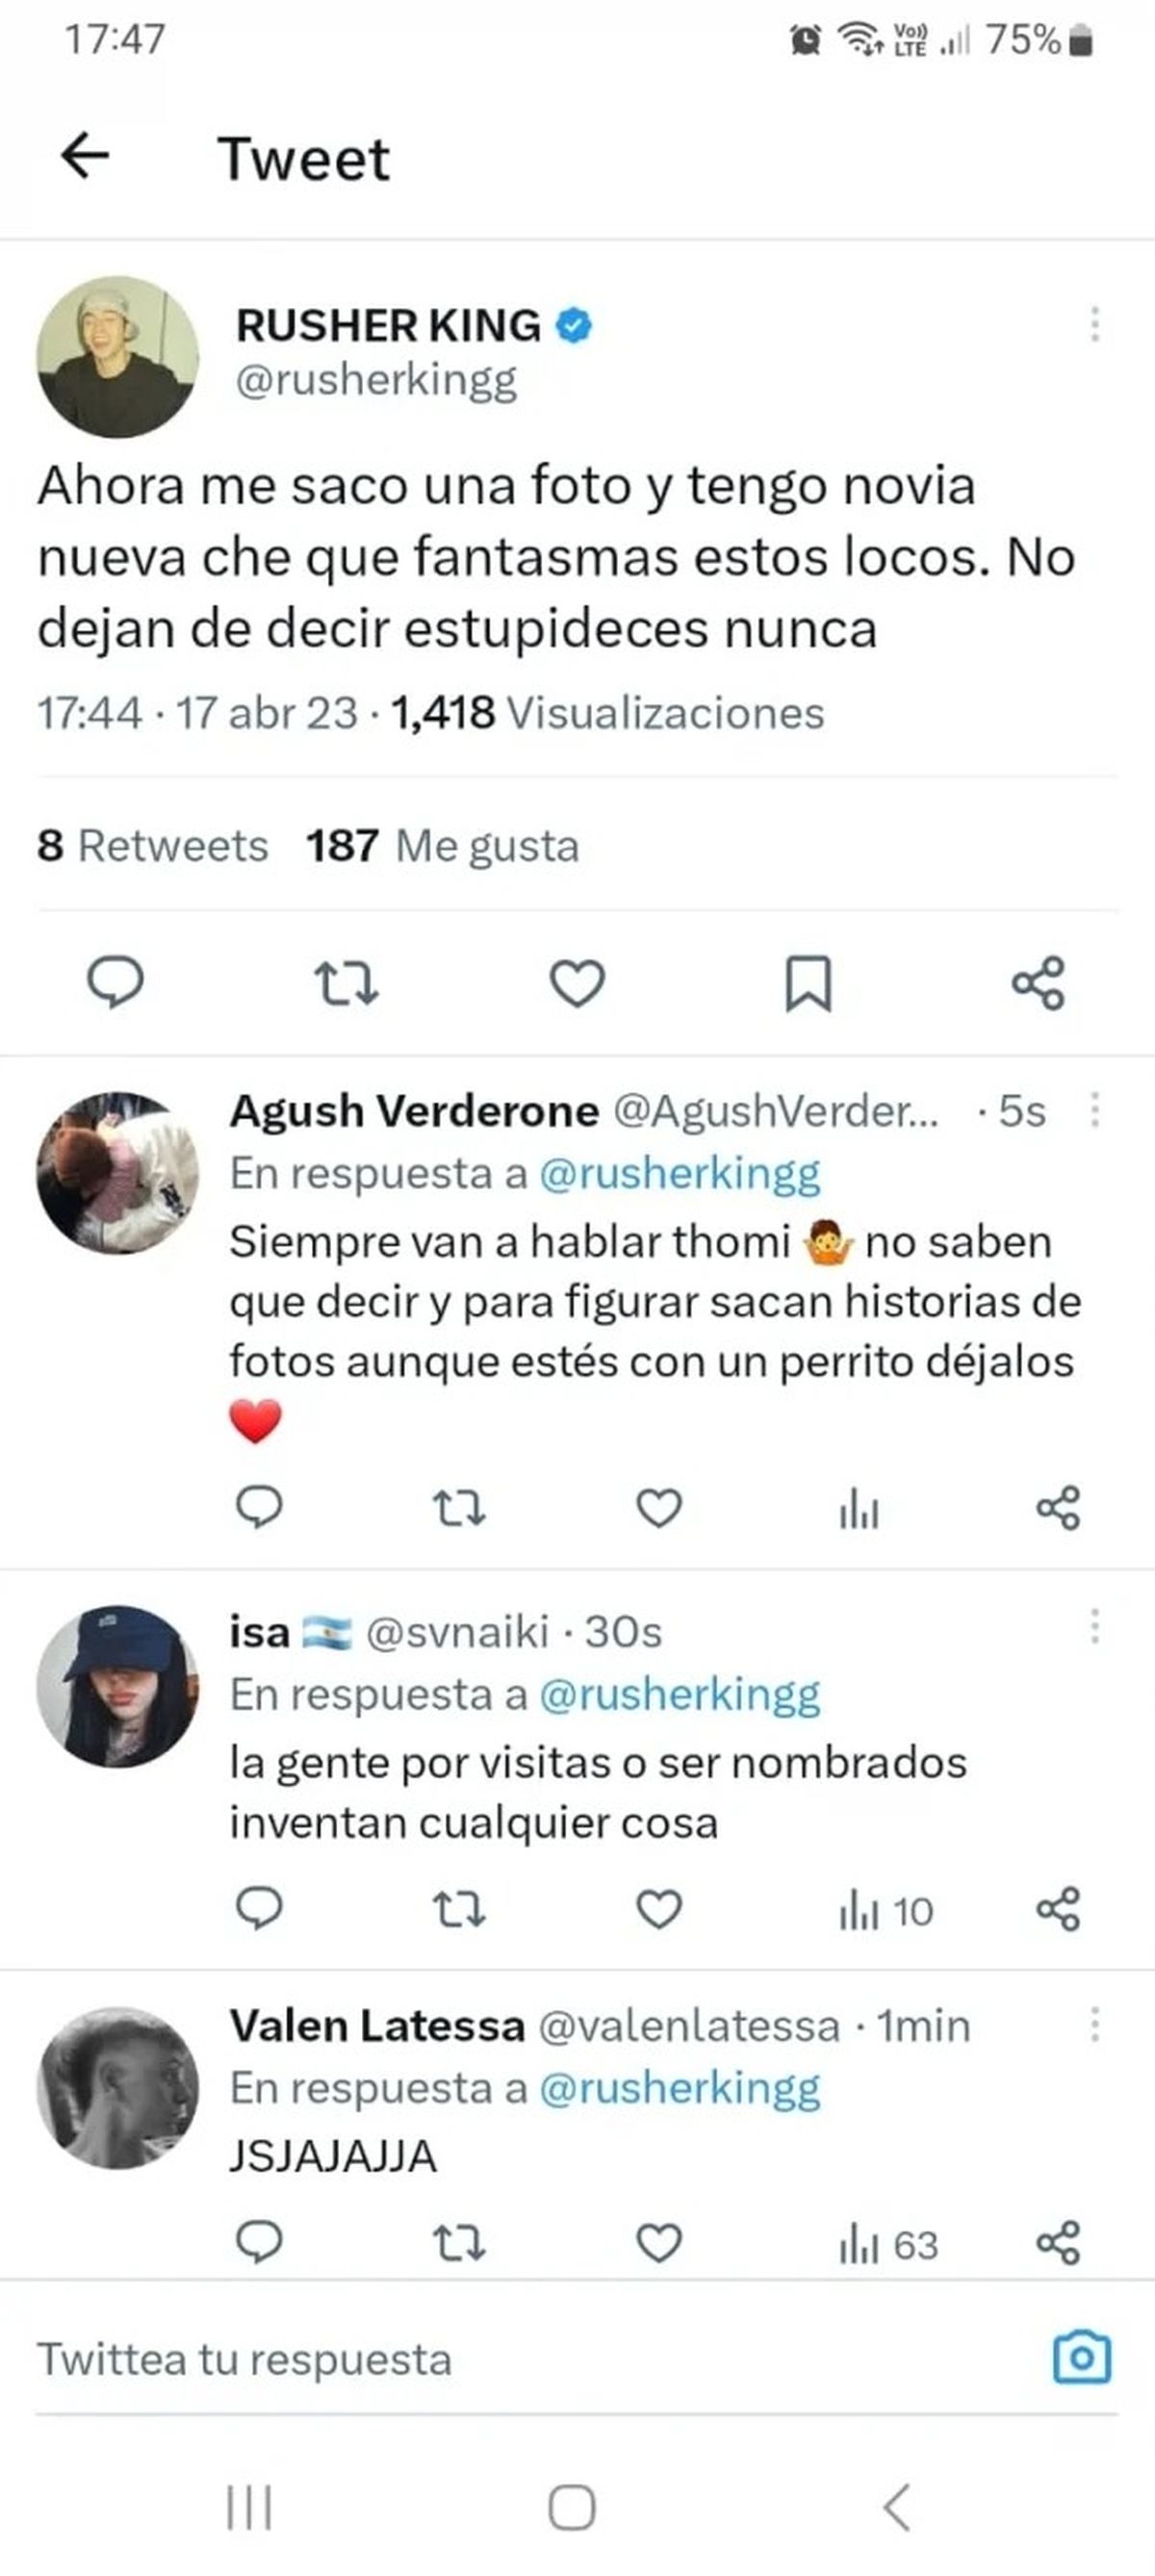 La reacción de Rusherking ante los rumores de romance con una modelo uruguaya tras la filtración de un video juntos:"No dejan de decir estupideces nunca"